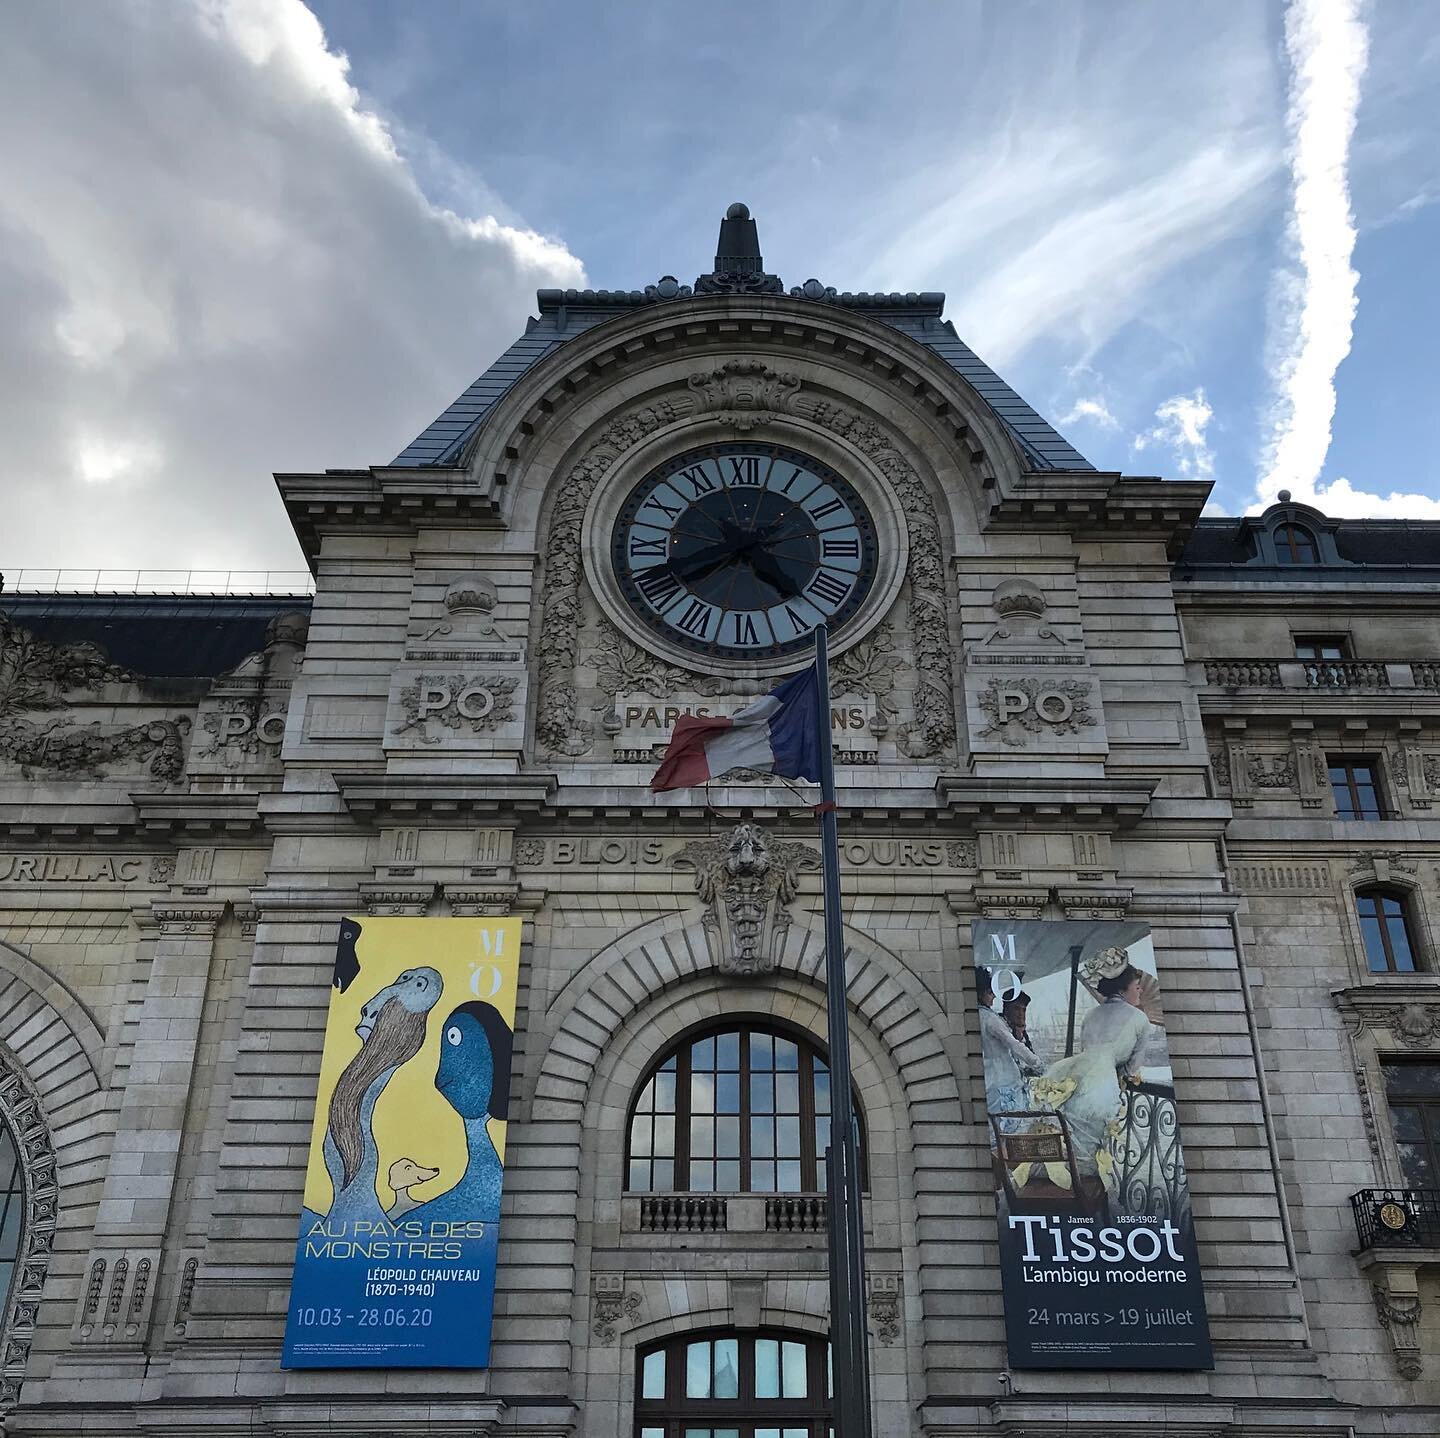 Paris-Musee-Orsay-Parisology.jpg